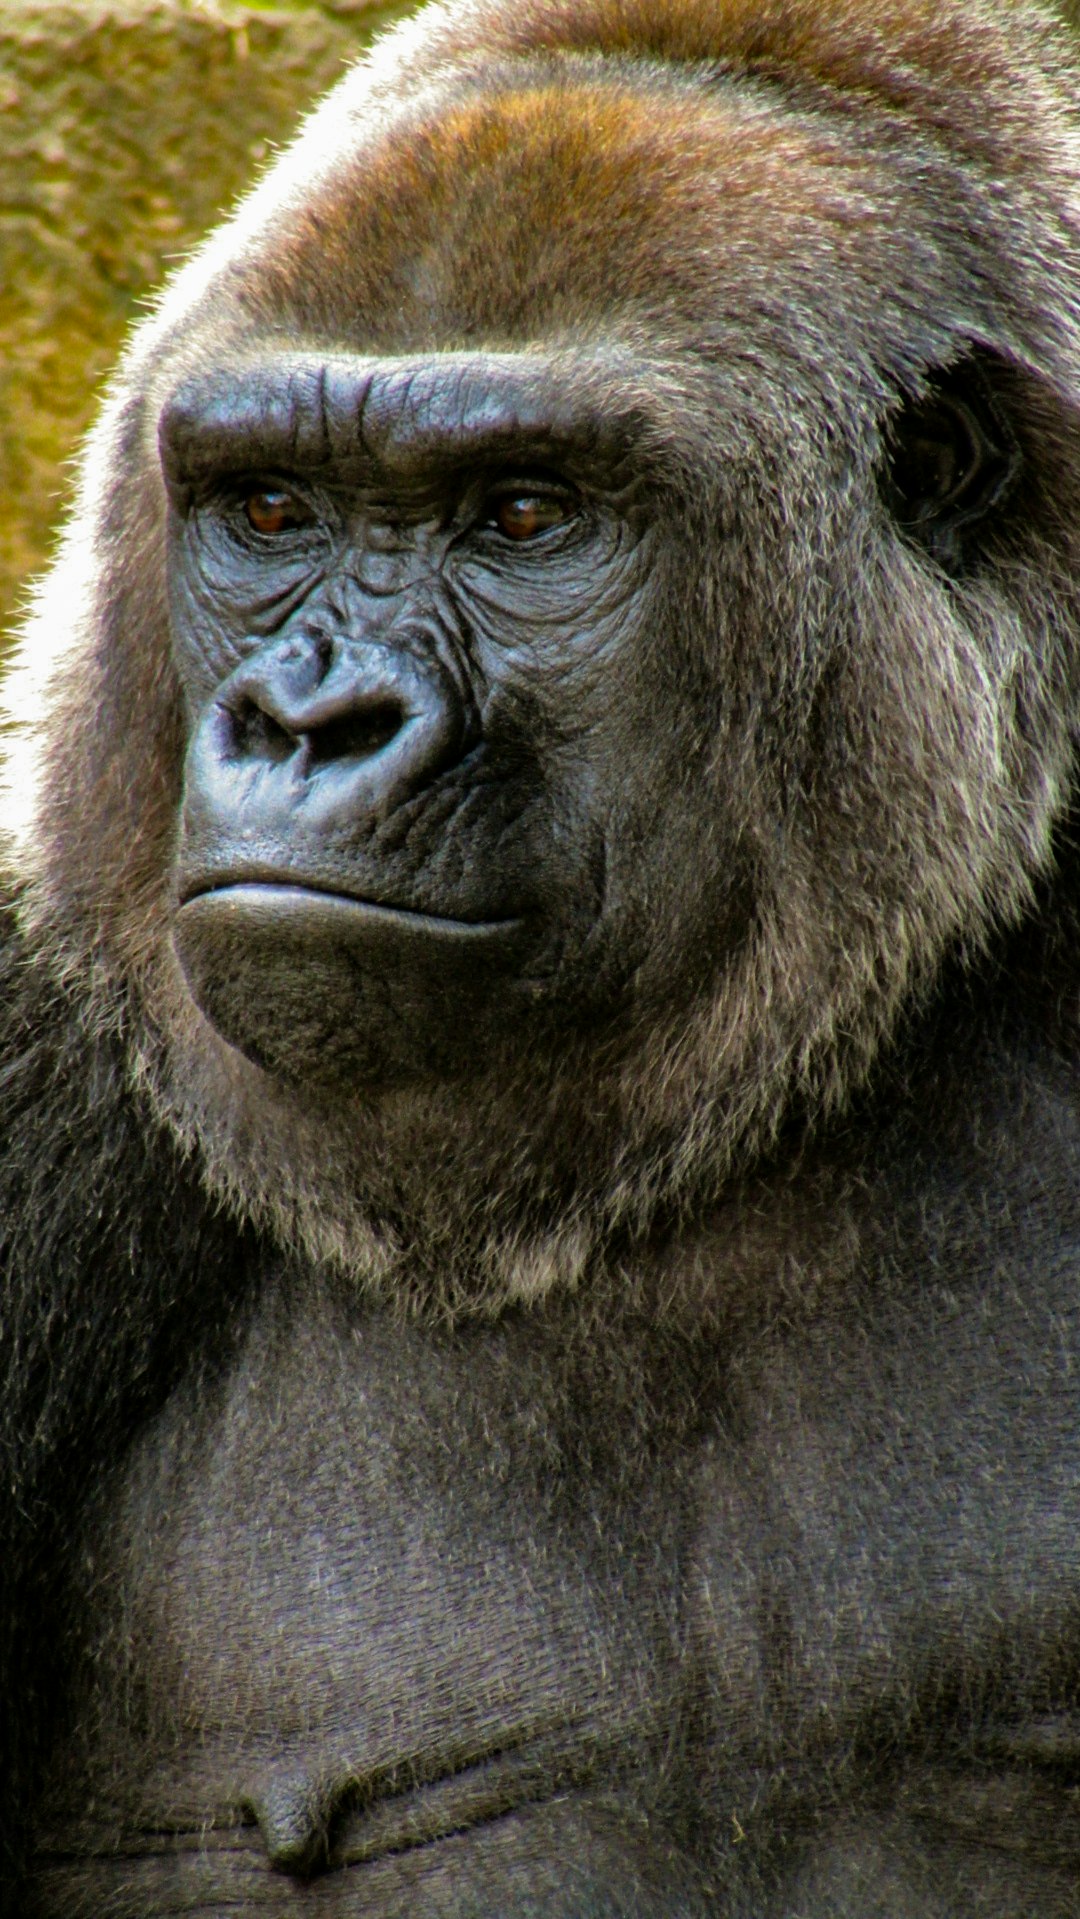  close up photo of gorilla gorilla